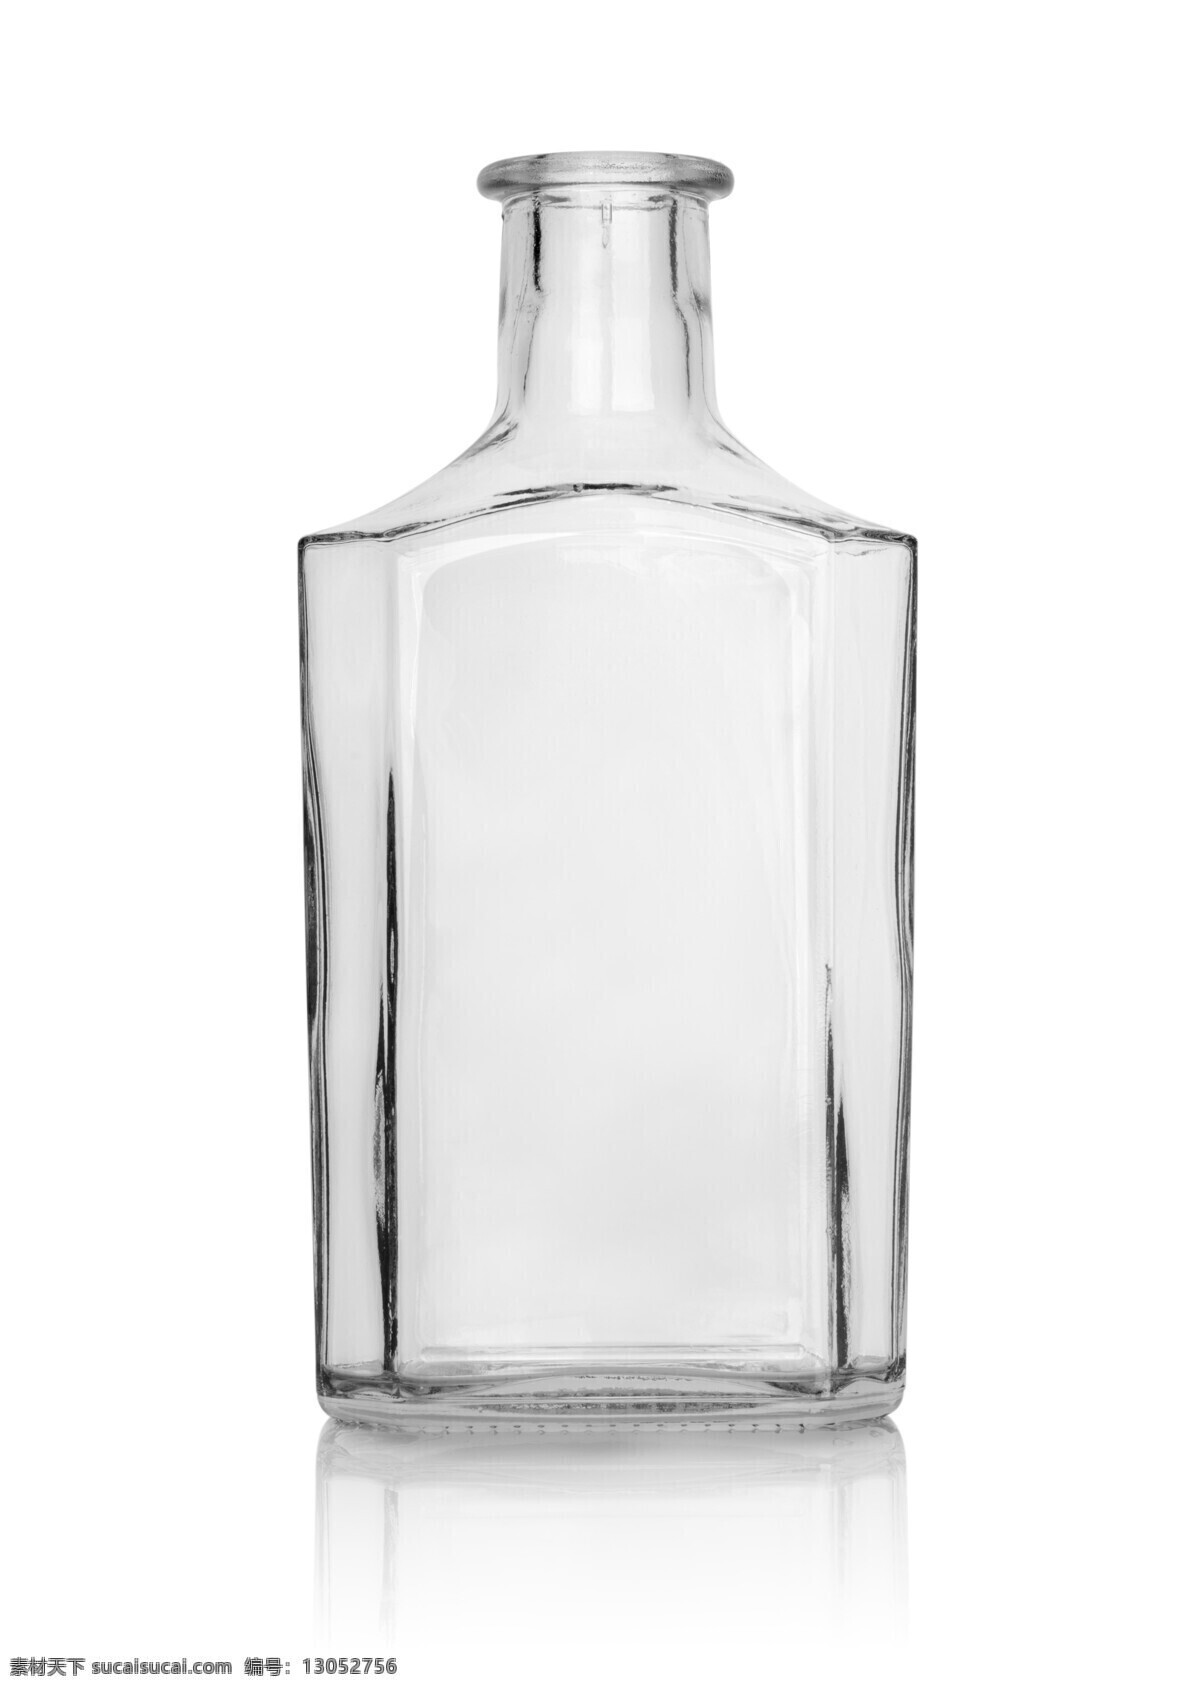 玻璃 瓶子 玻璃瓶 酒瓶 饮料 生活用品 酒水饮料 生活百科